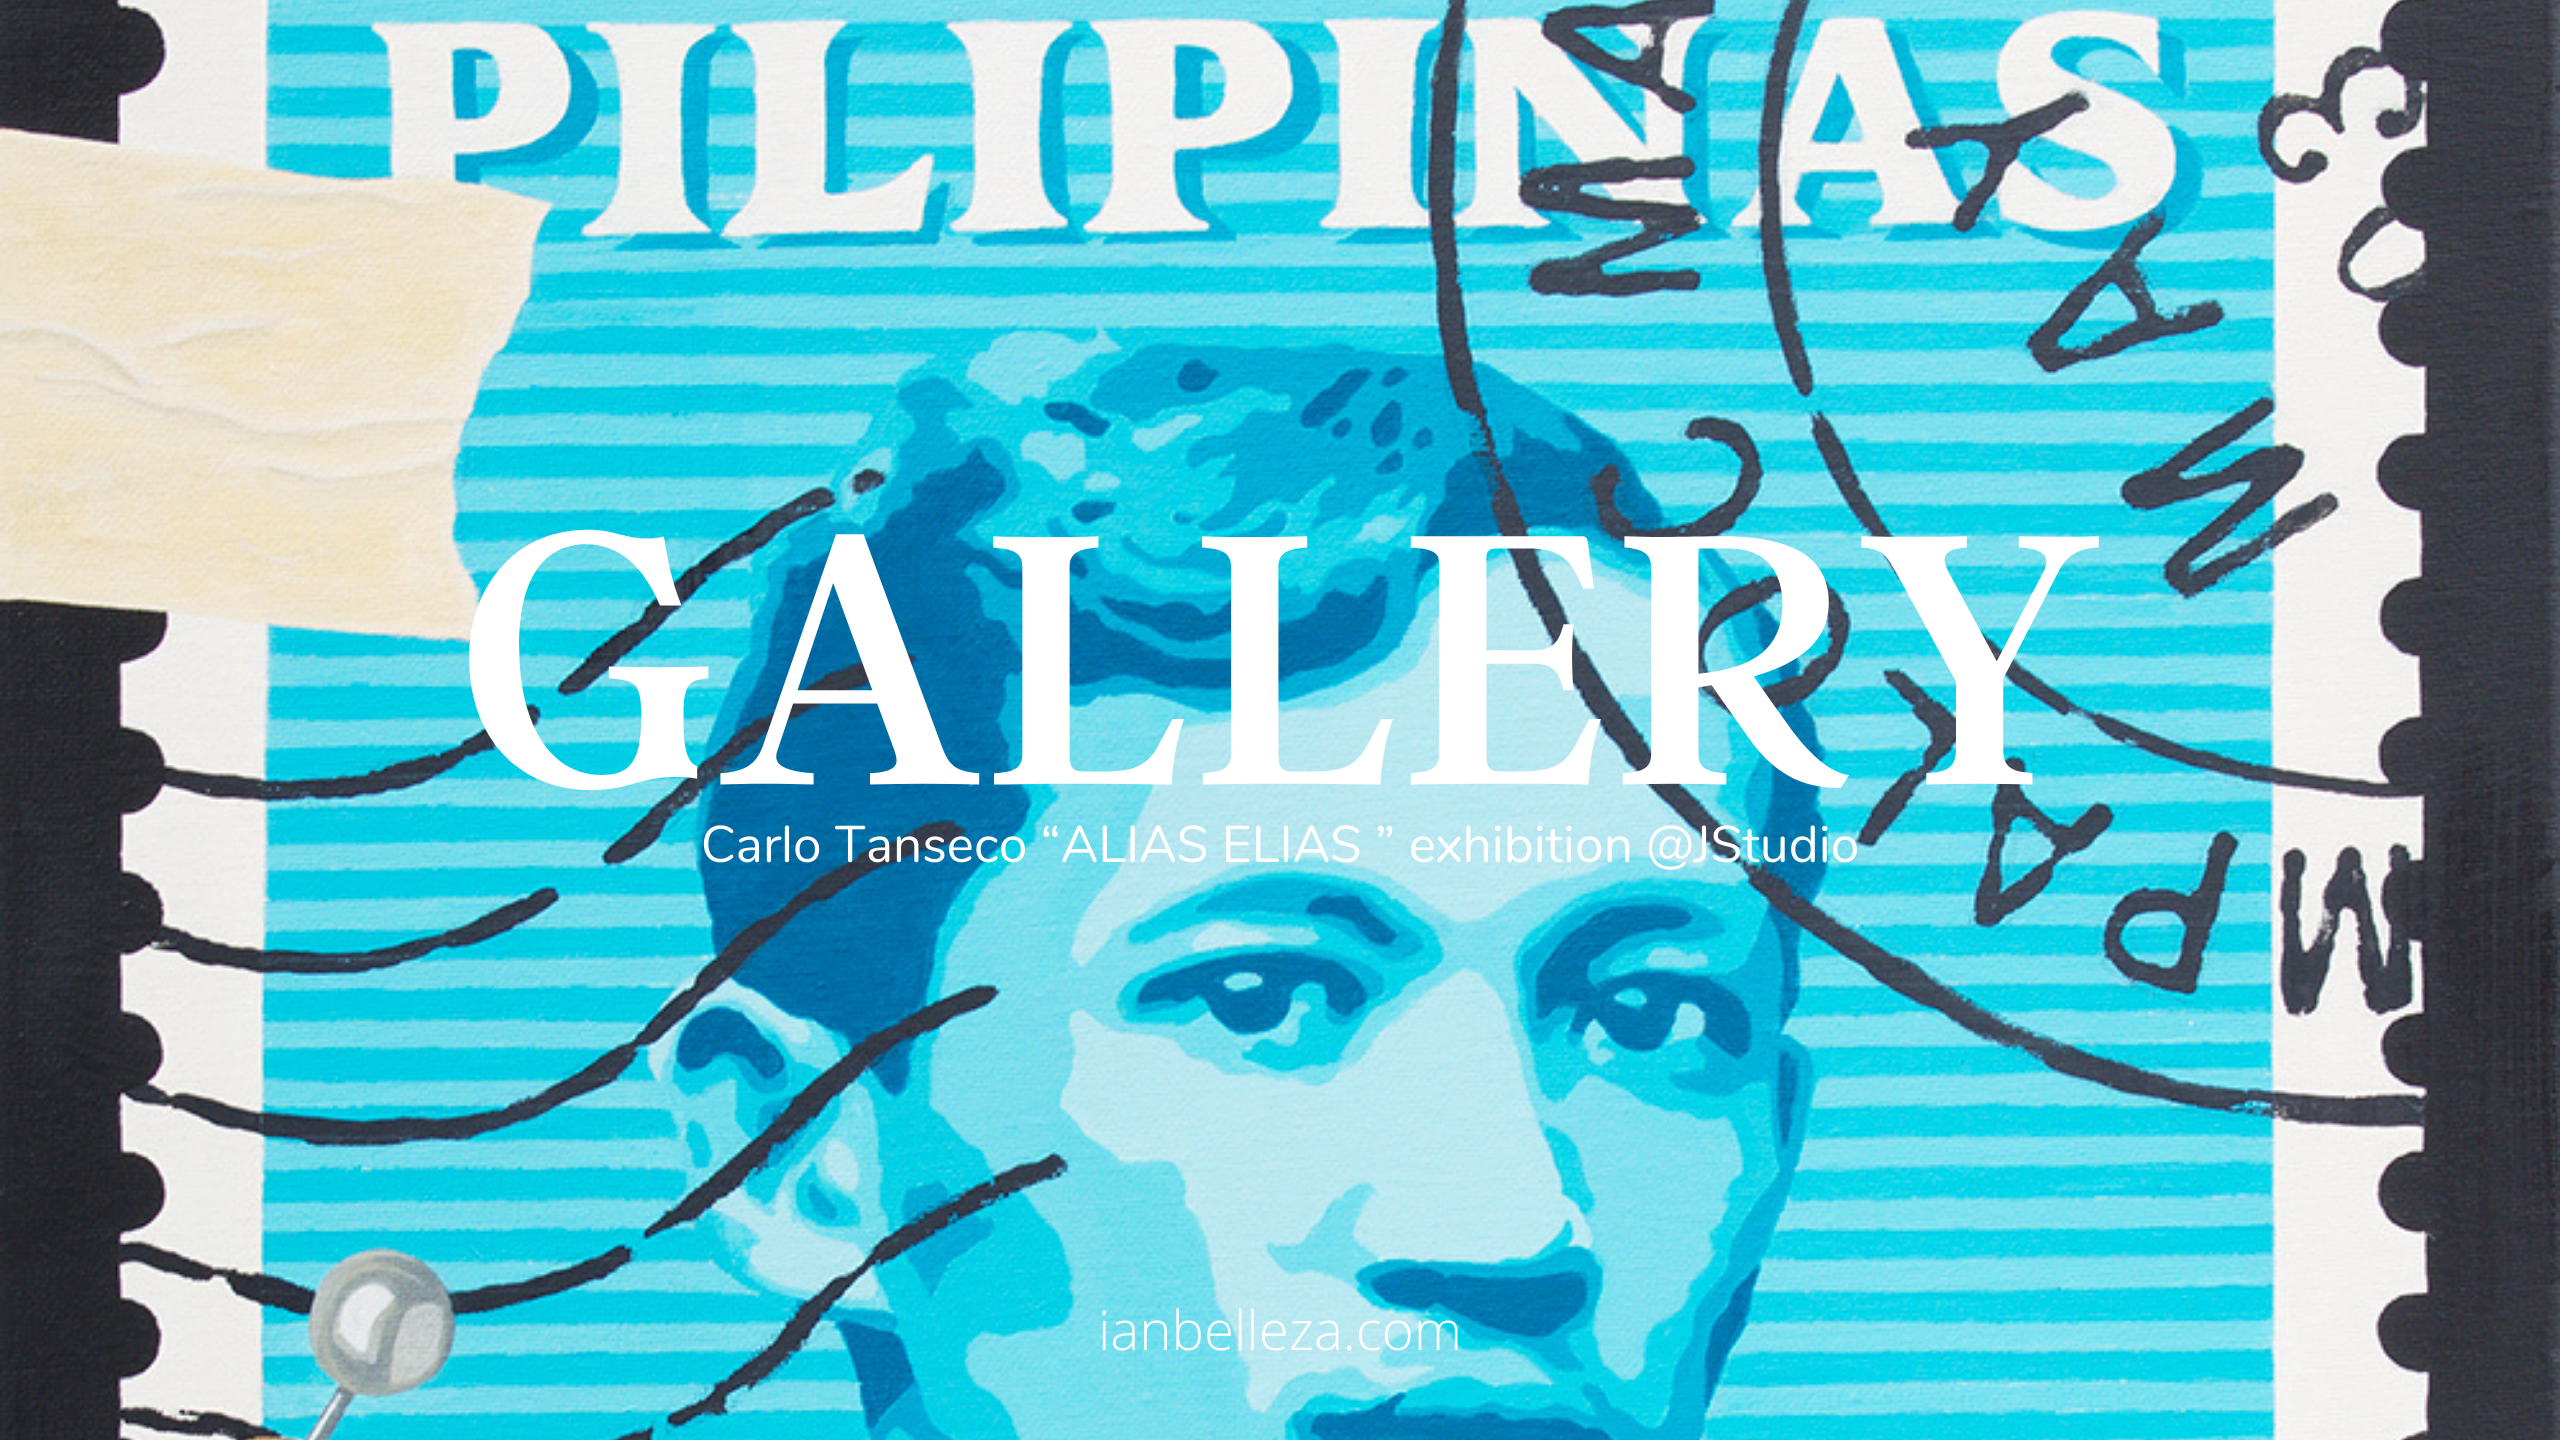 Gallery: Carlo Tanseco “ALIAS ELIAS ” exhibition @JStudio